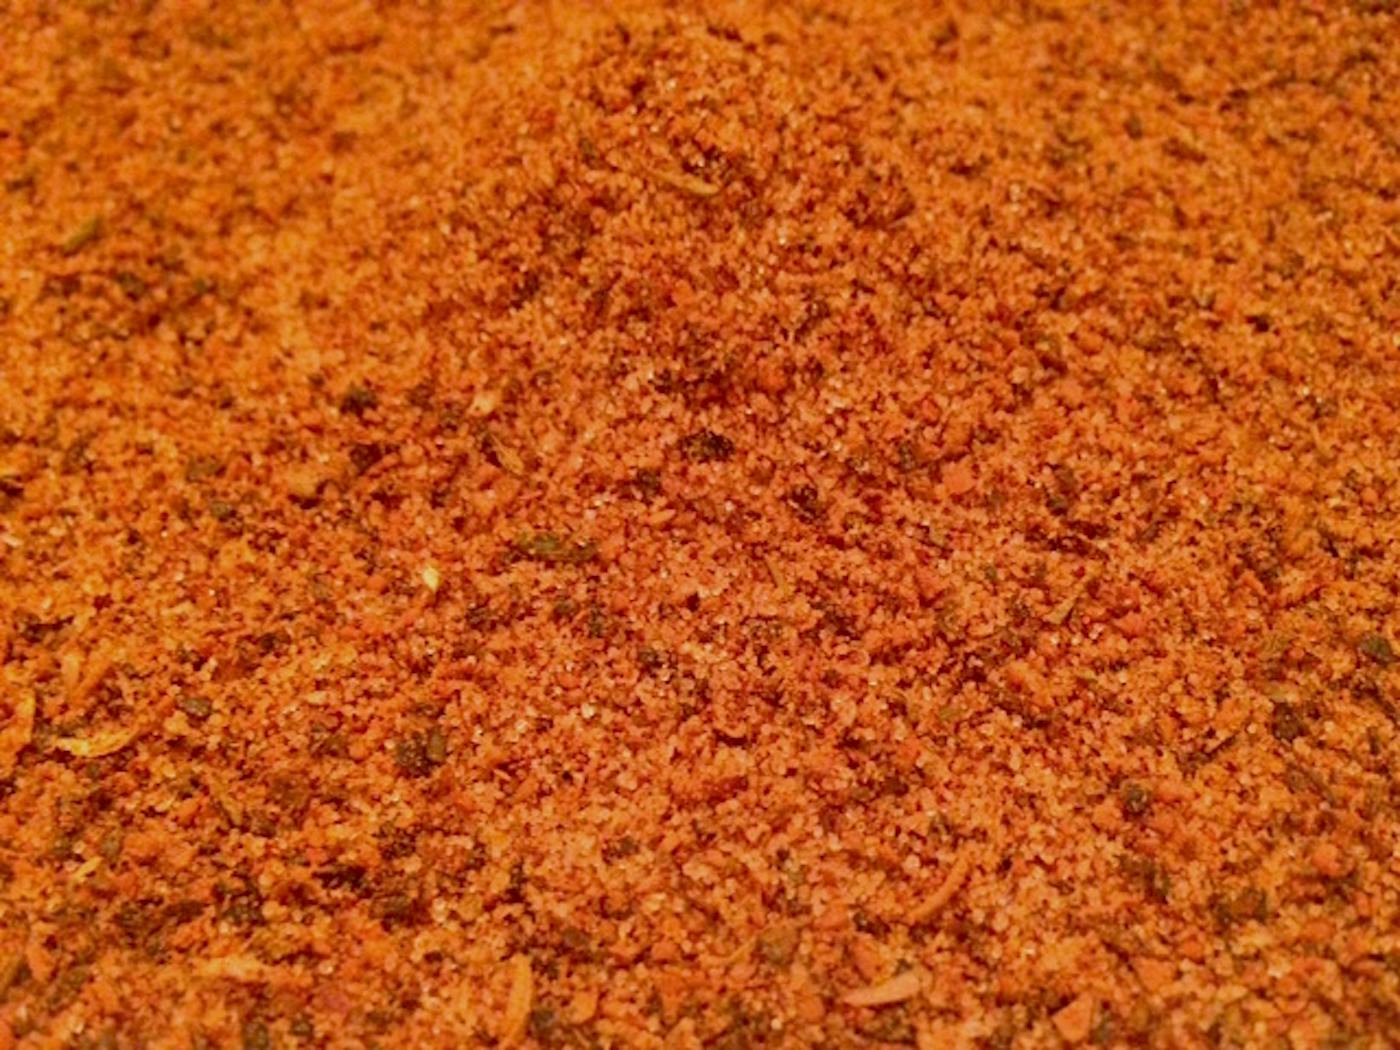 Pick 2 Lawry's Seasonings: Chili Powder, Cinnamon, Garlic